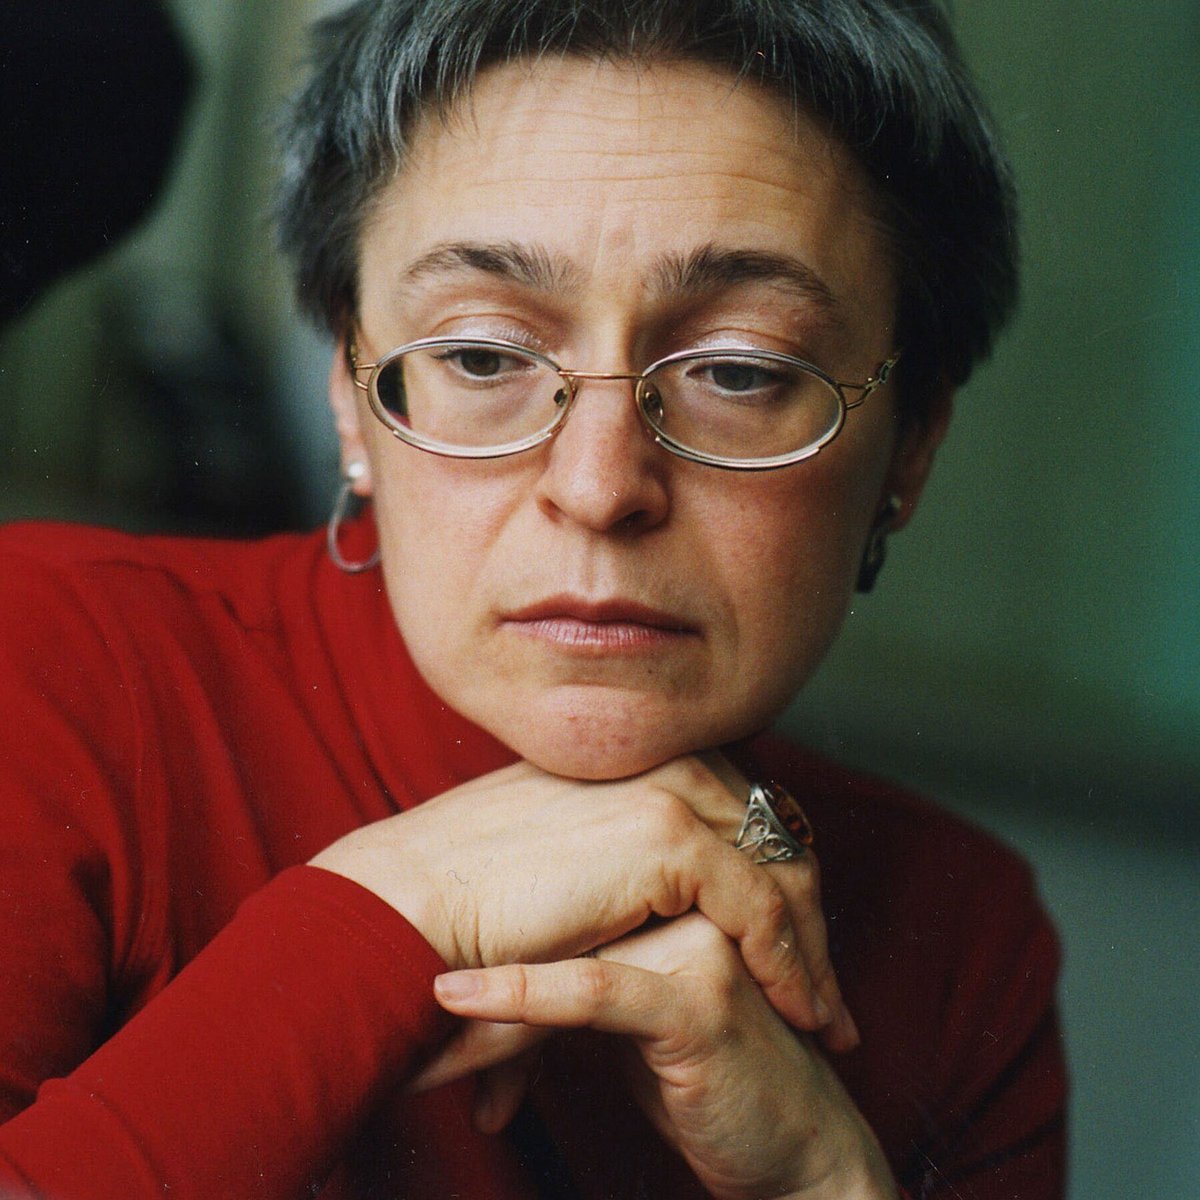 Anna Politkovskya Murdered by Putin in 2006 for being a journalist